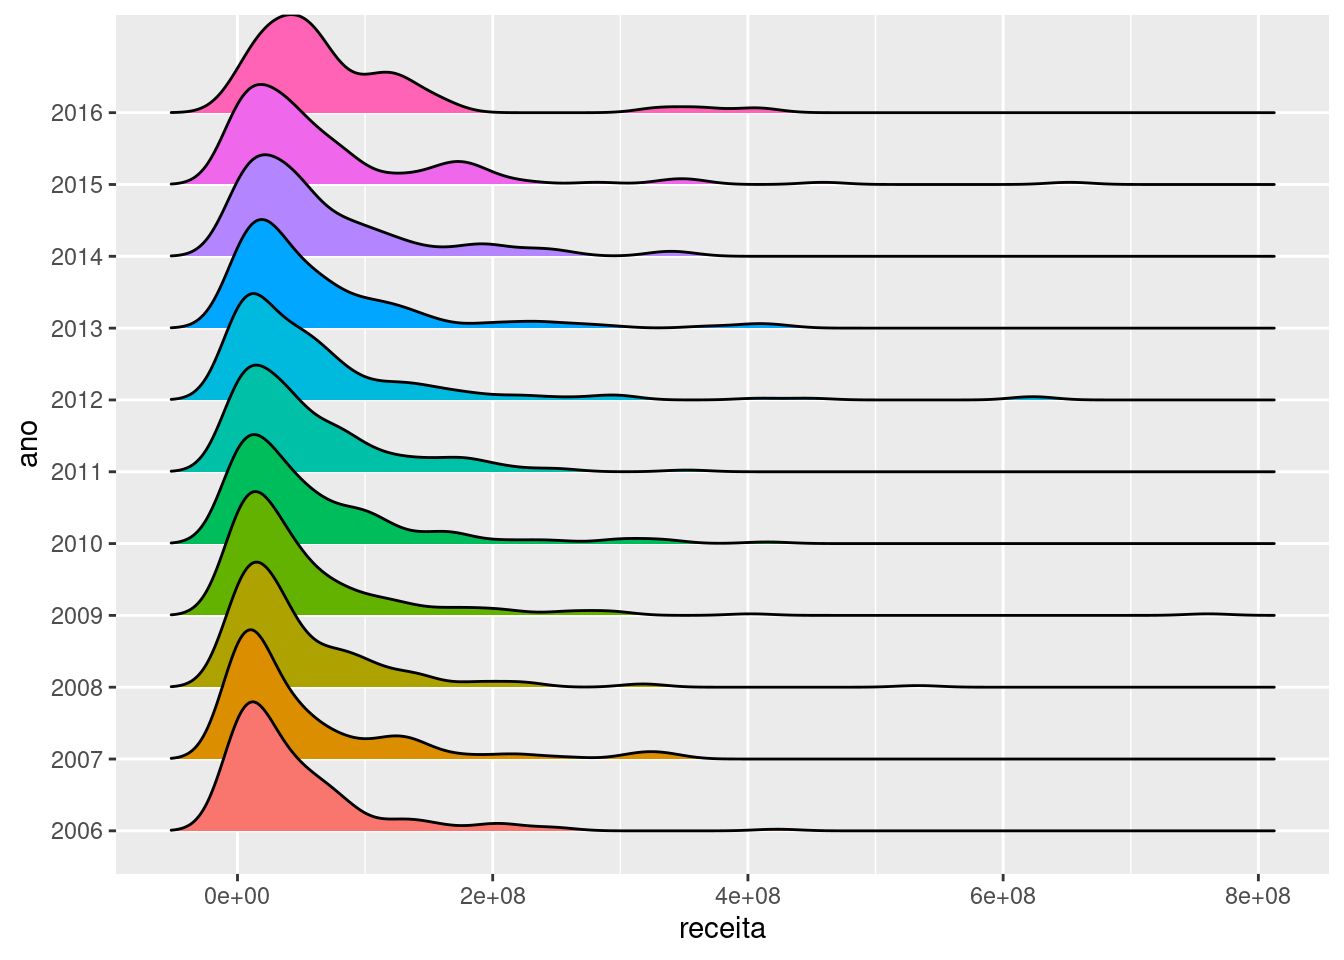 Ggplot Grafico De Barras Con Variables Y R Ggplot Grafico De Barras